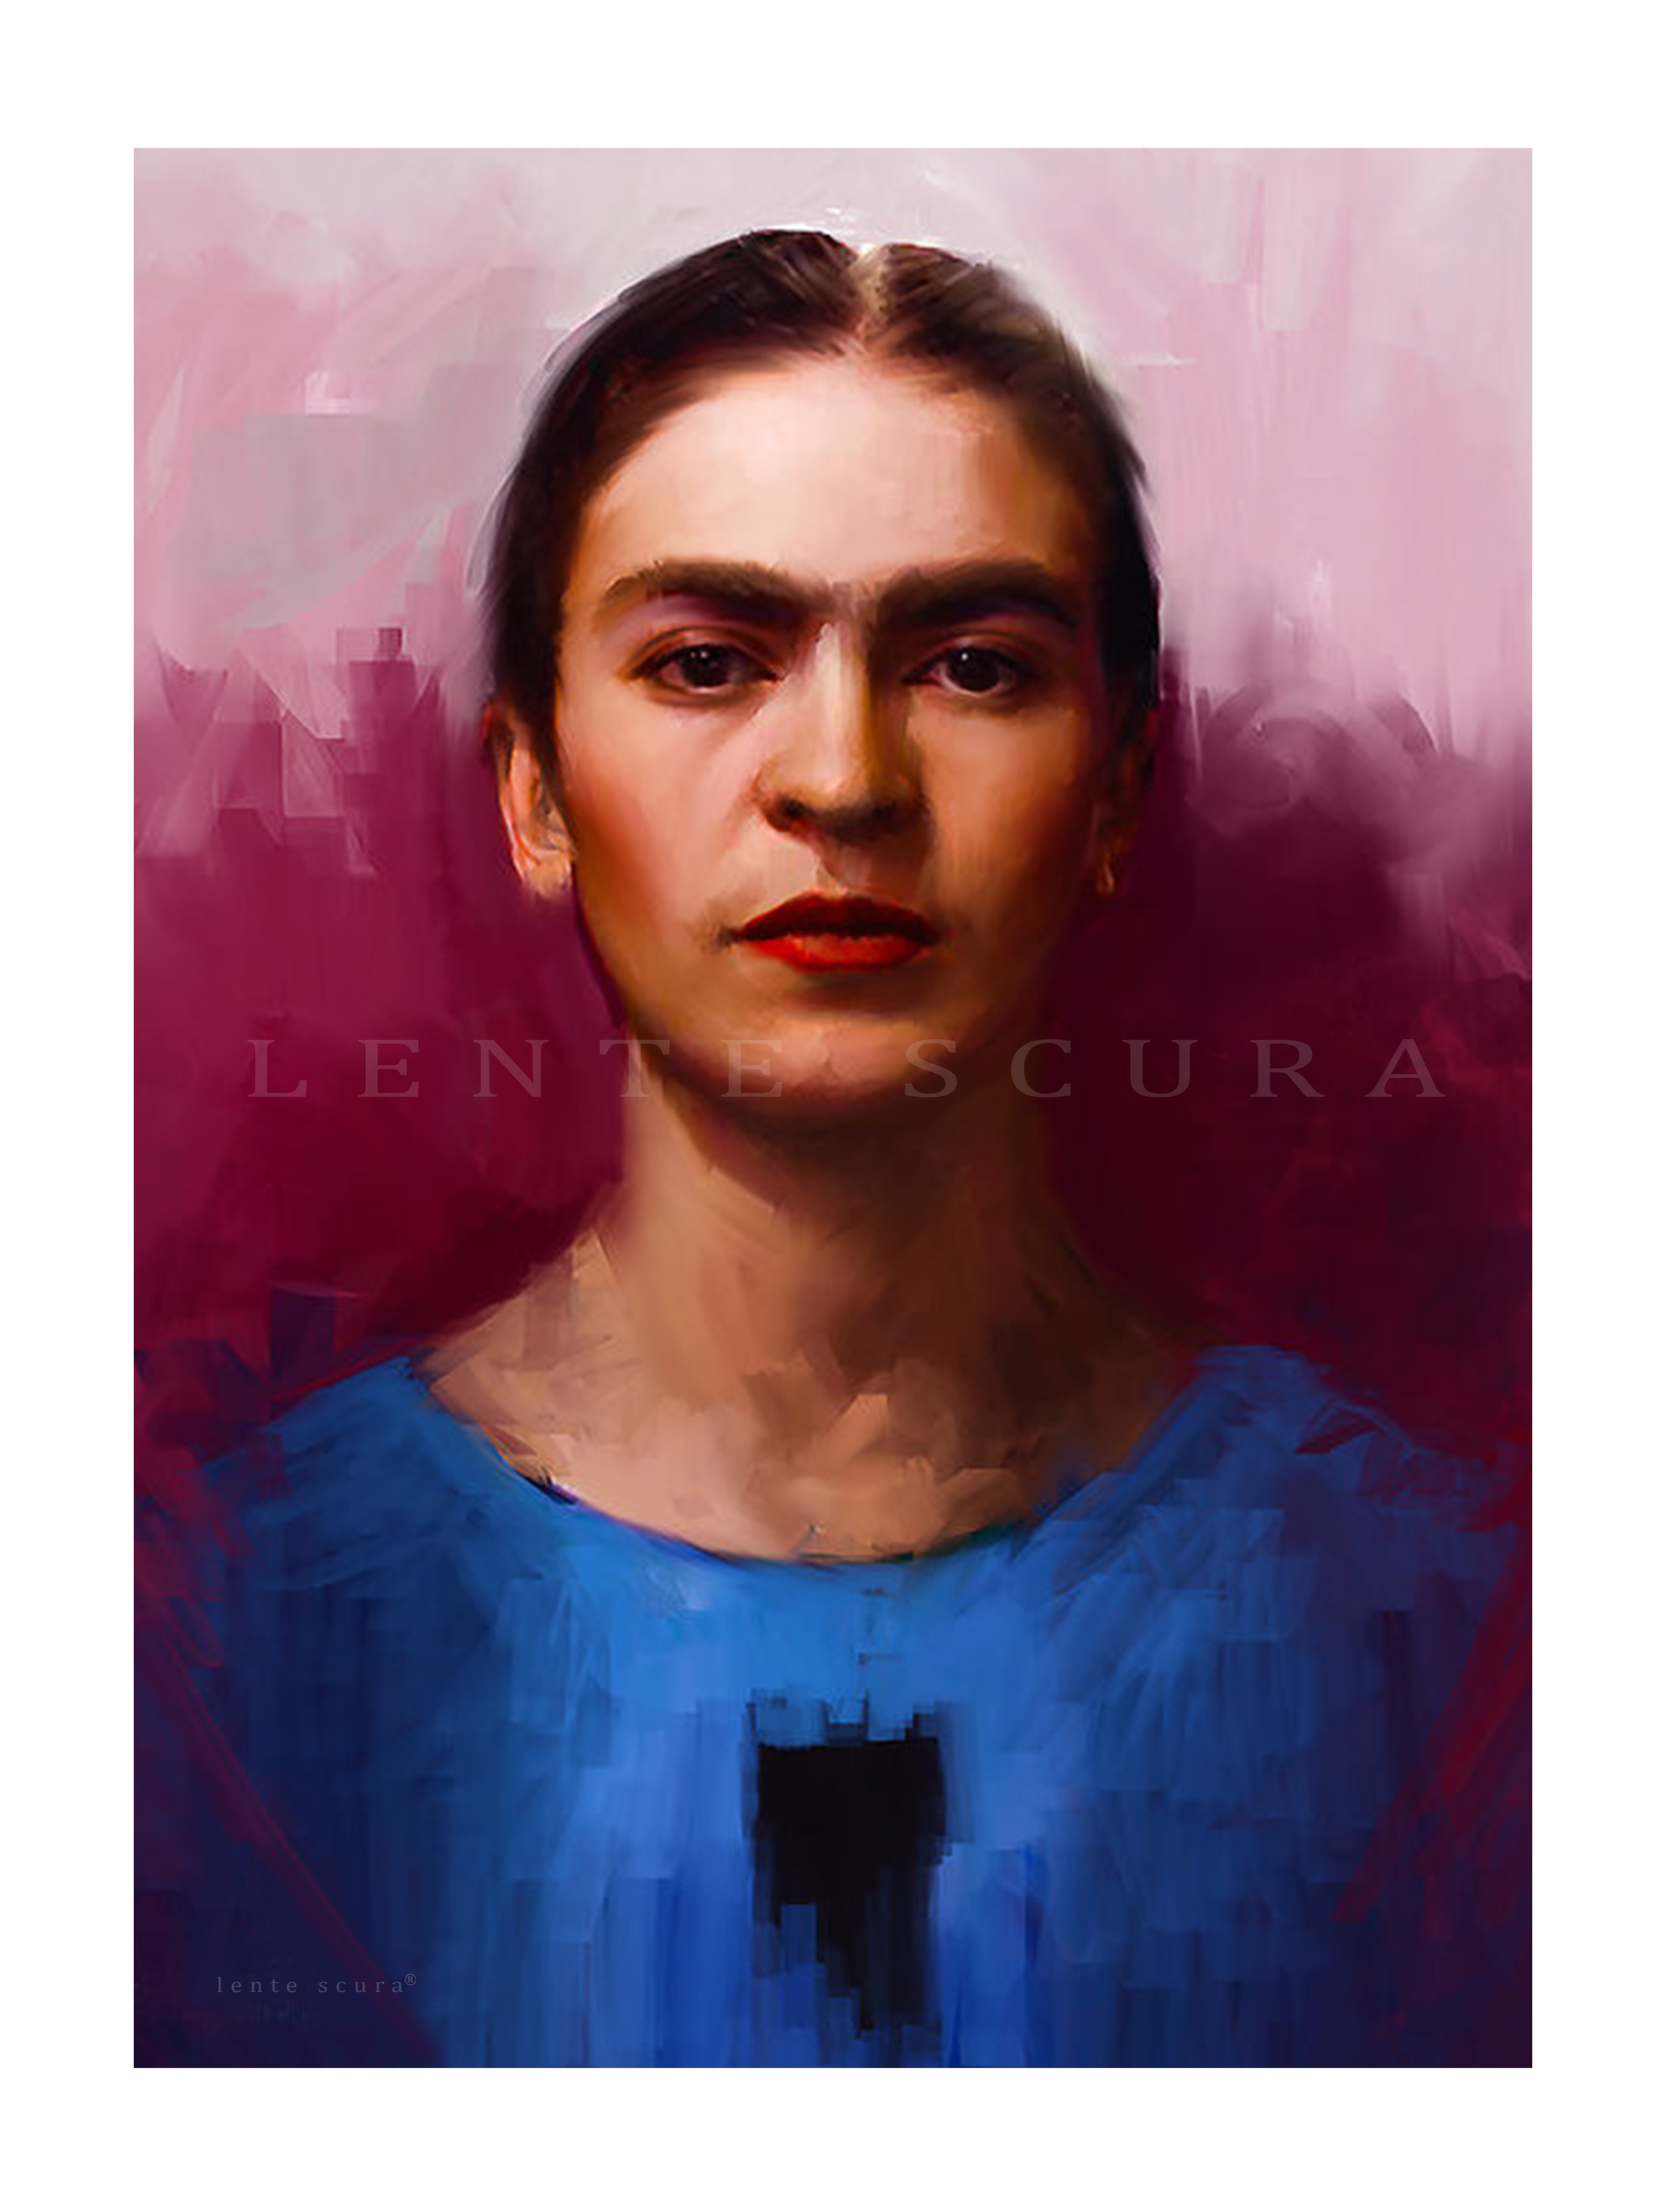 Un Ritratto di Frida Kahlo
di Lente Scura
Diritto d'autore (copyright)